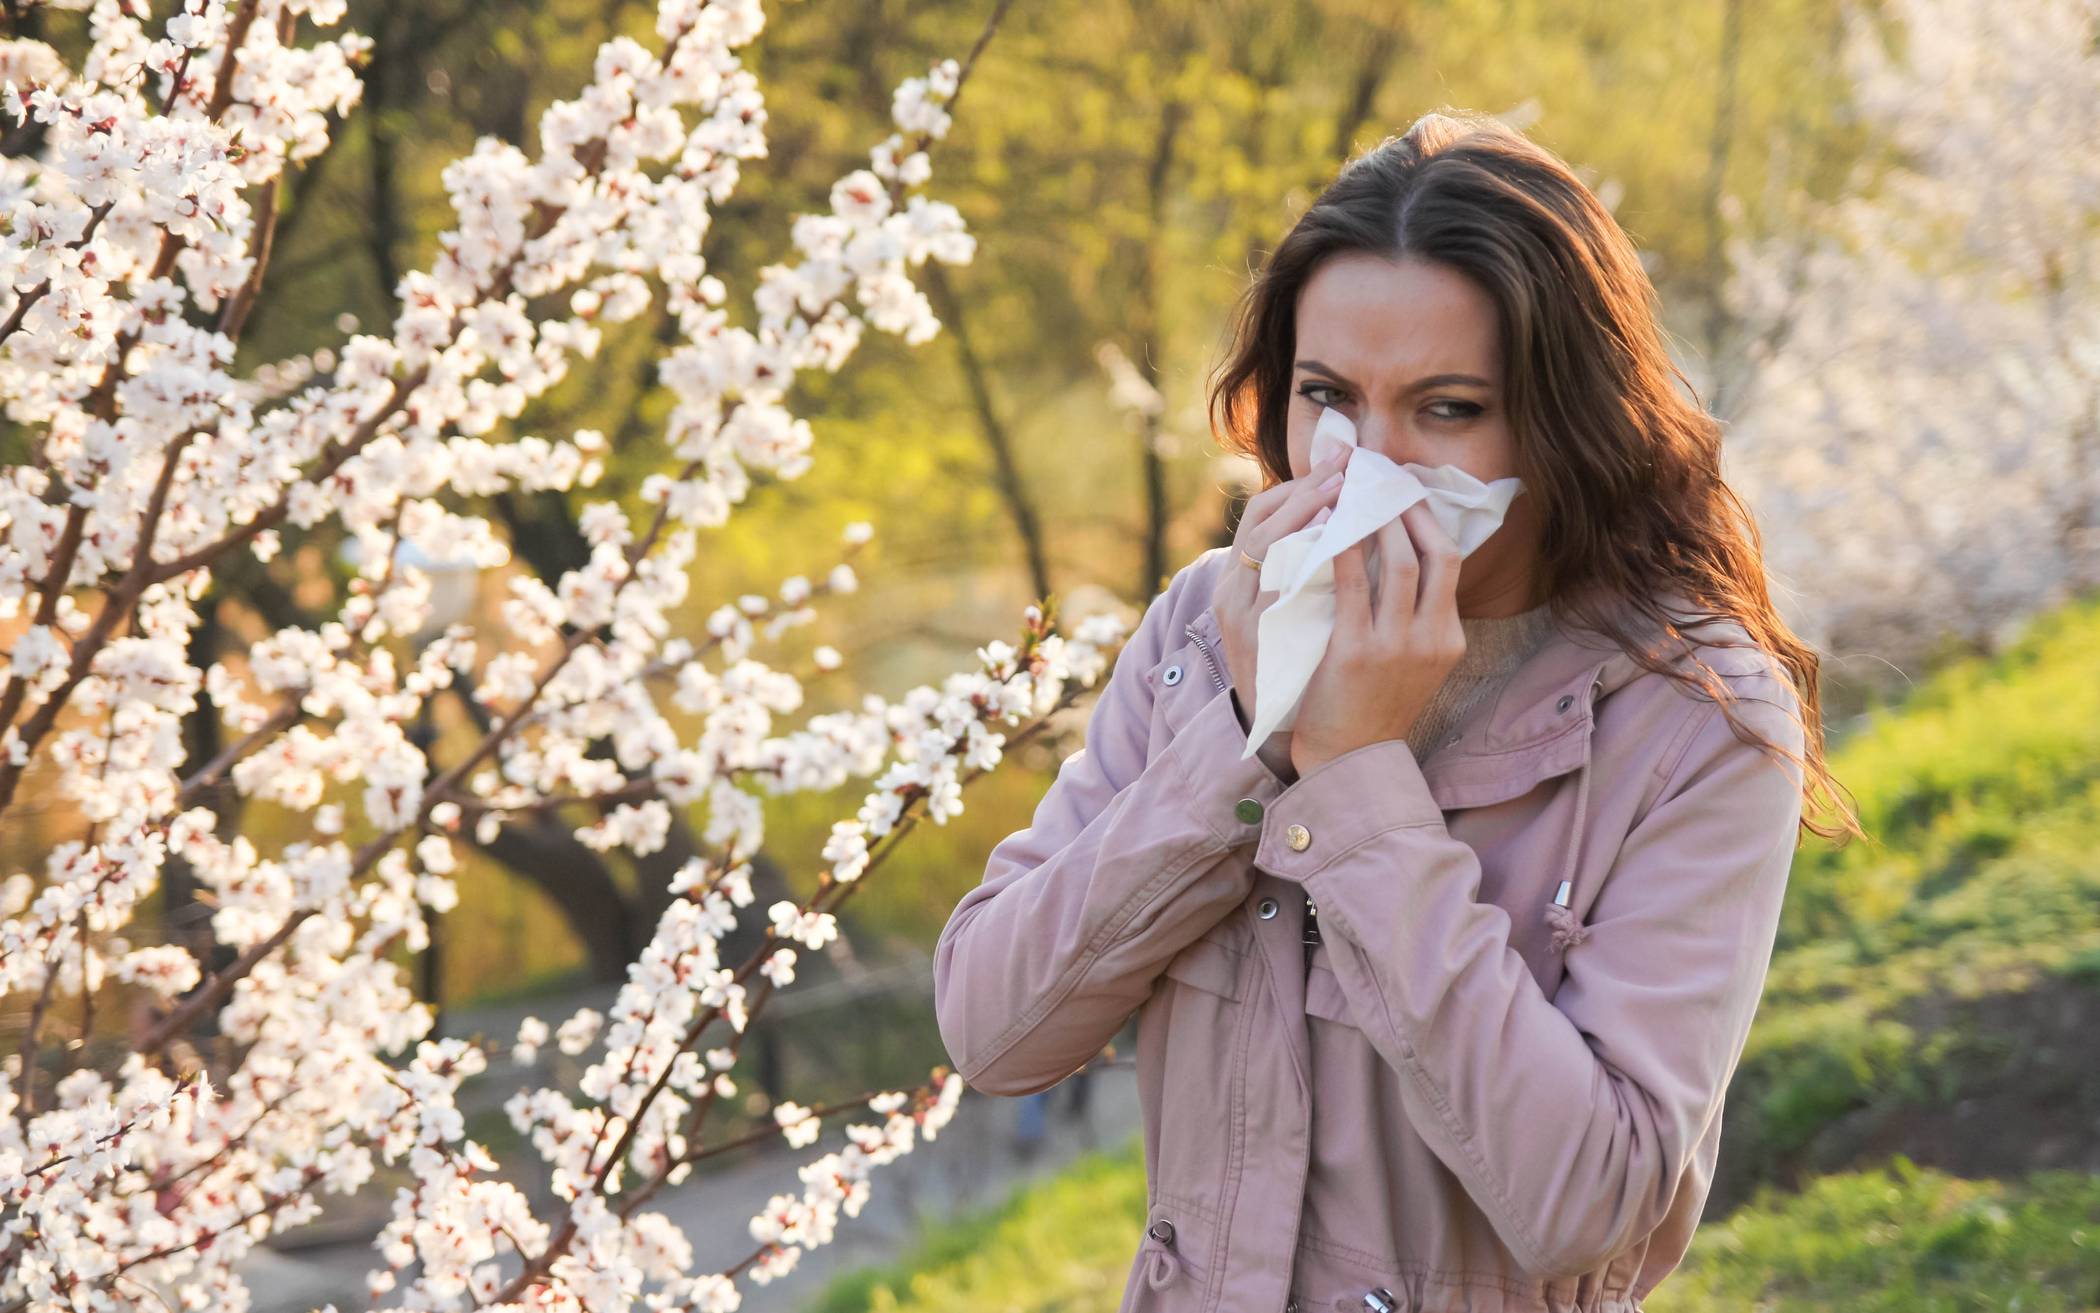 Pollen-Allergie: immer früher und immer stärker.